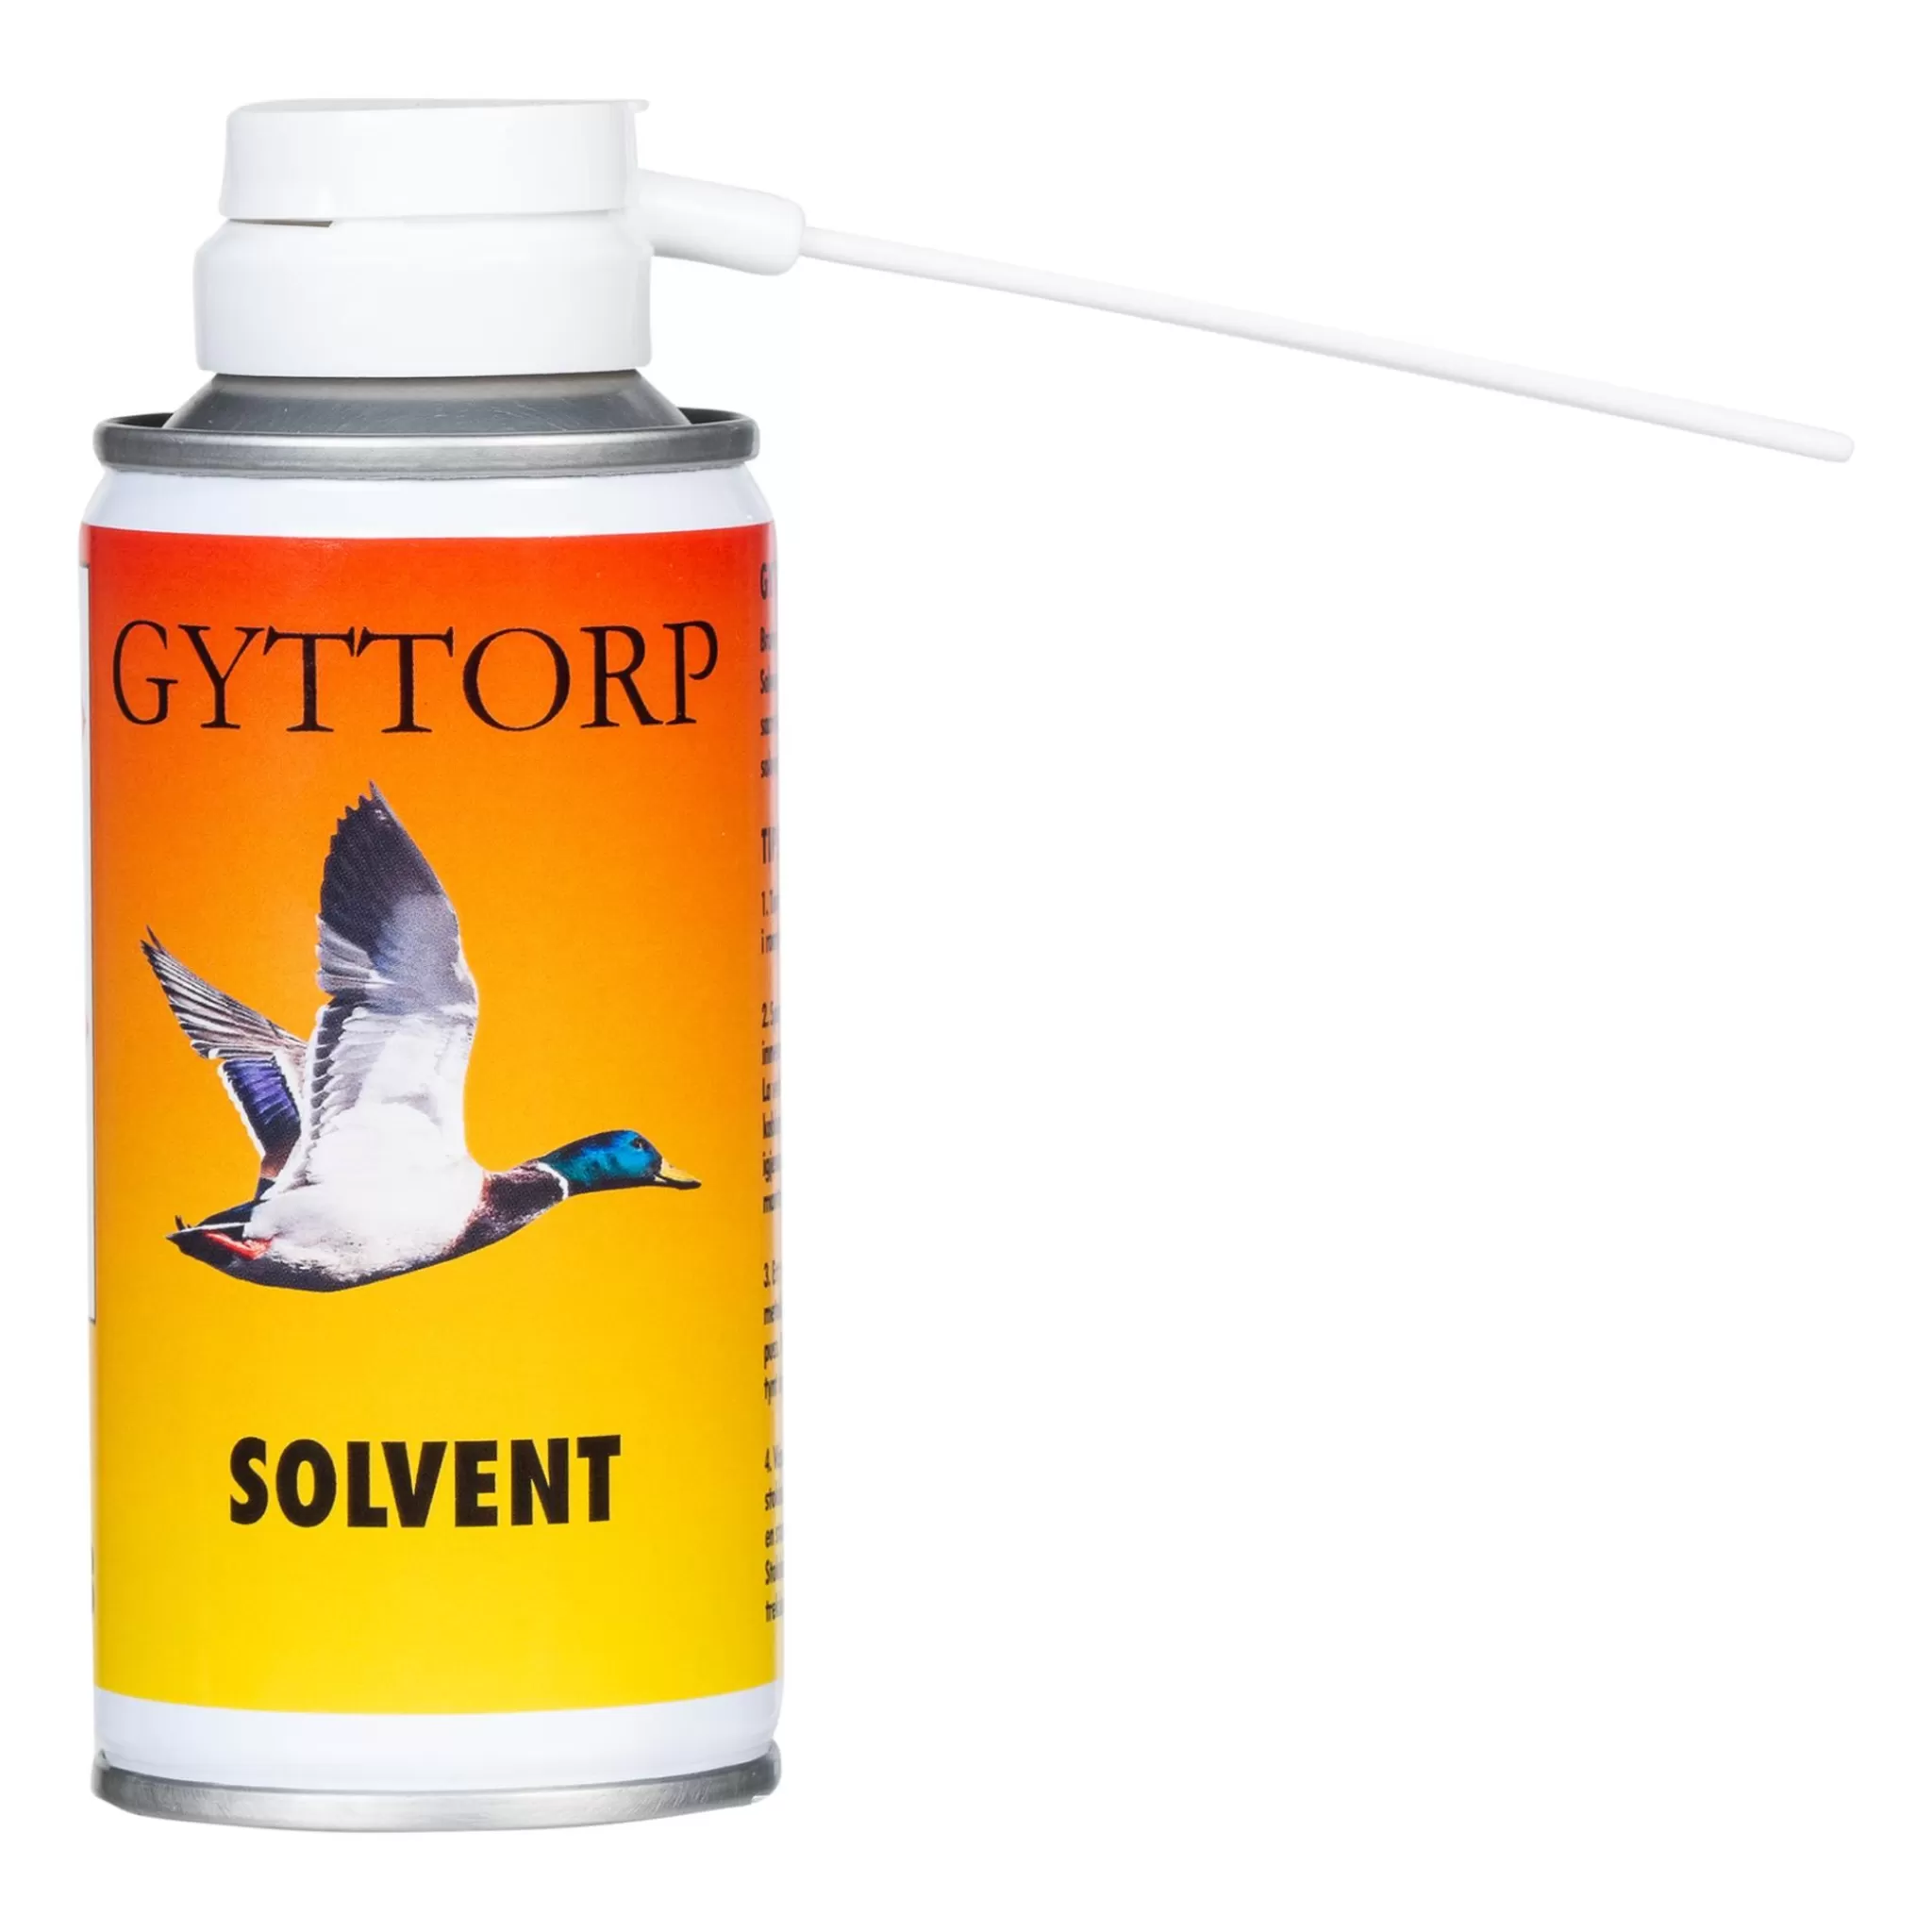 Best gyttorp Solvent, Solvent